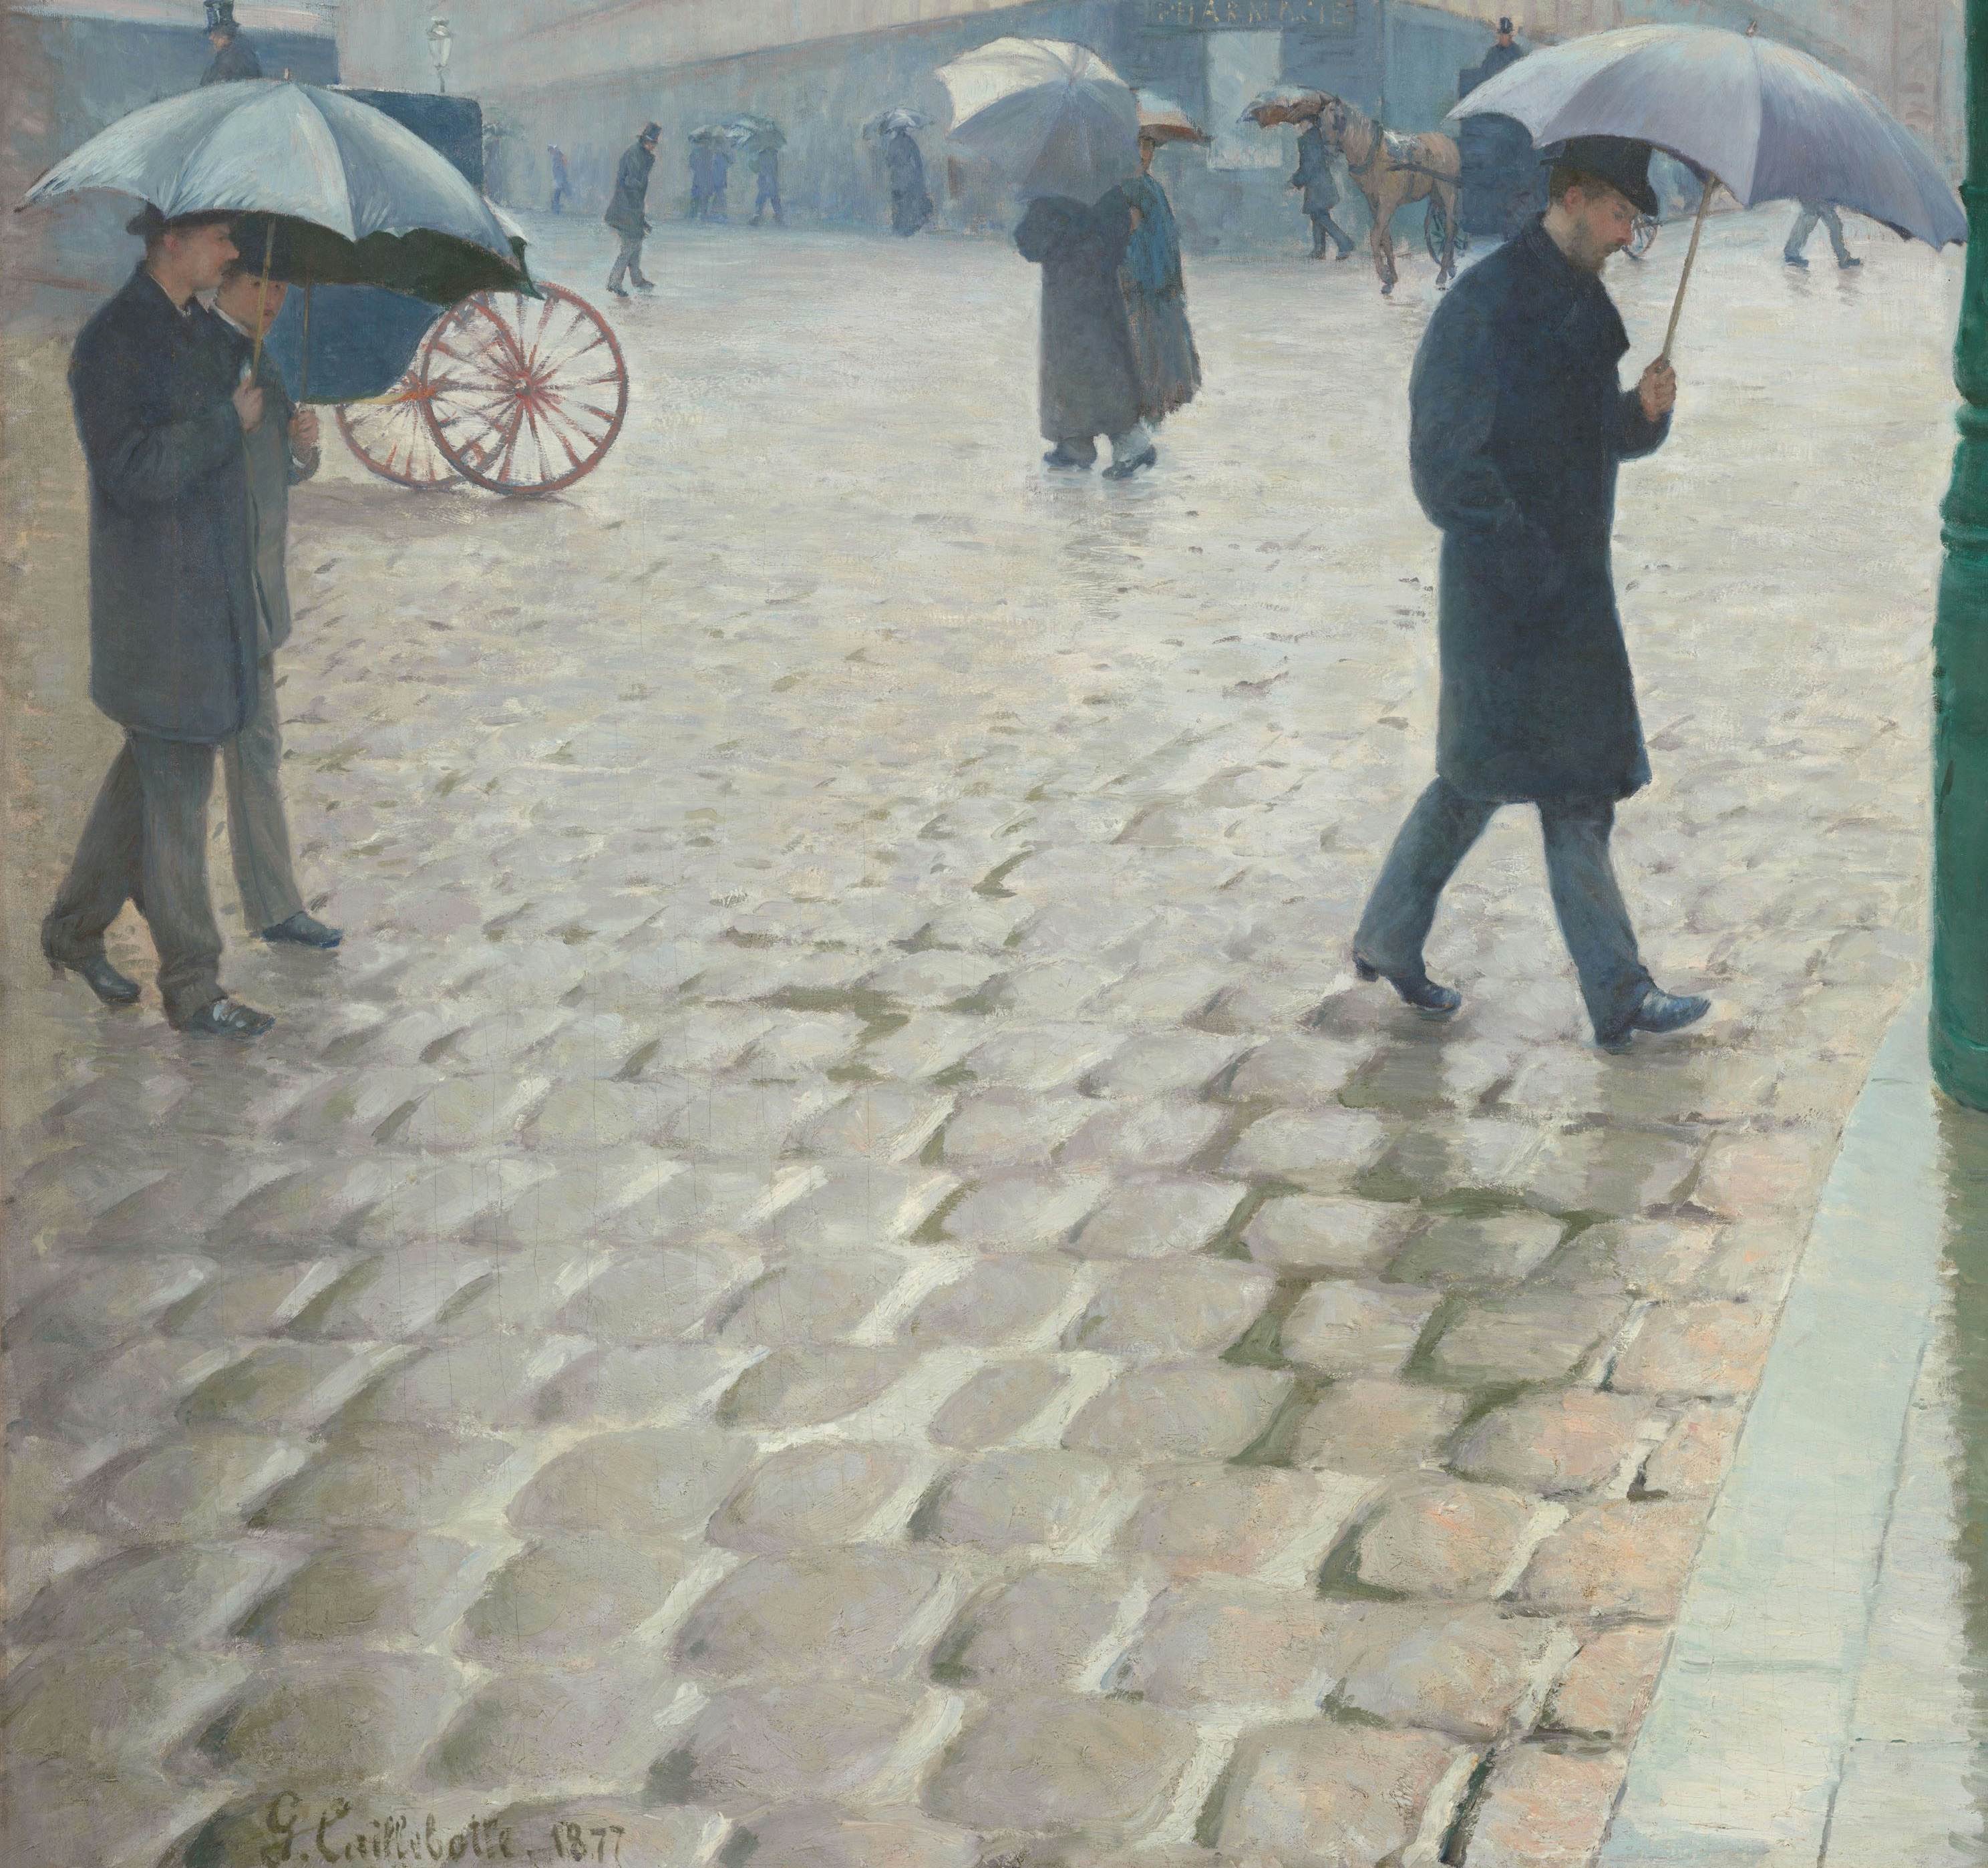 雨天的巴黎街道paris Street Rainy Day古斯塔夫 卡勒波特 Gustave Caillebotte 油画作品欣赏 水彩迷